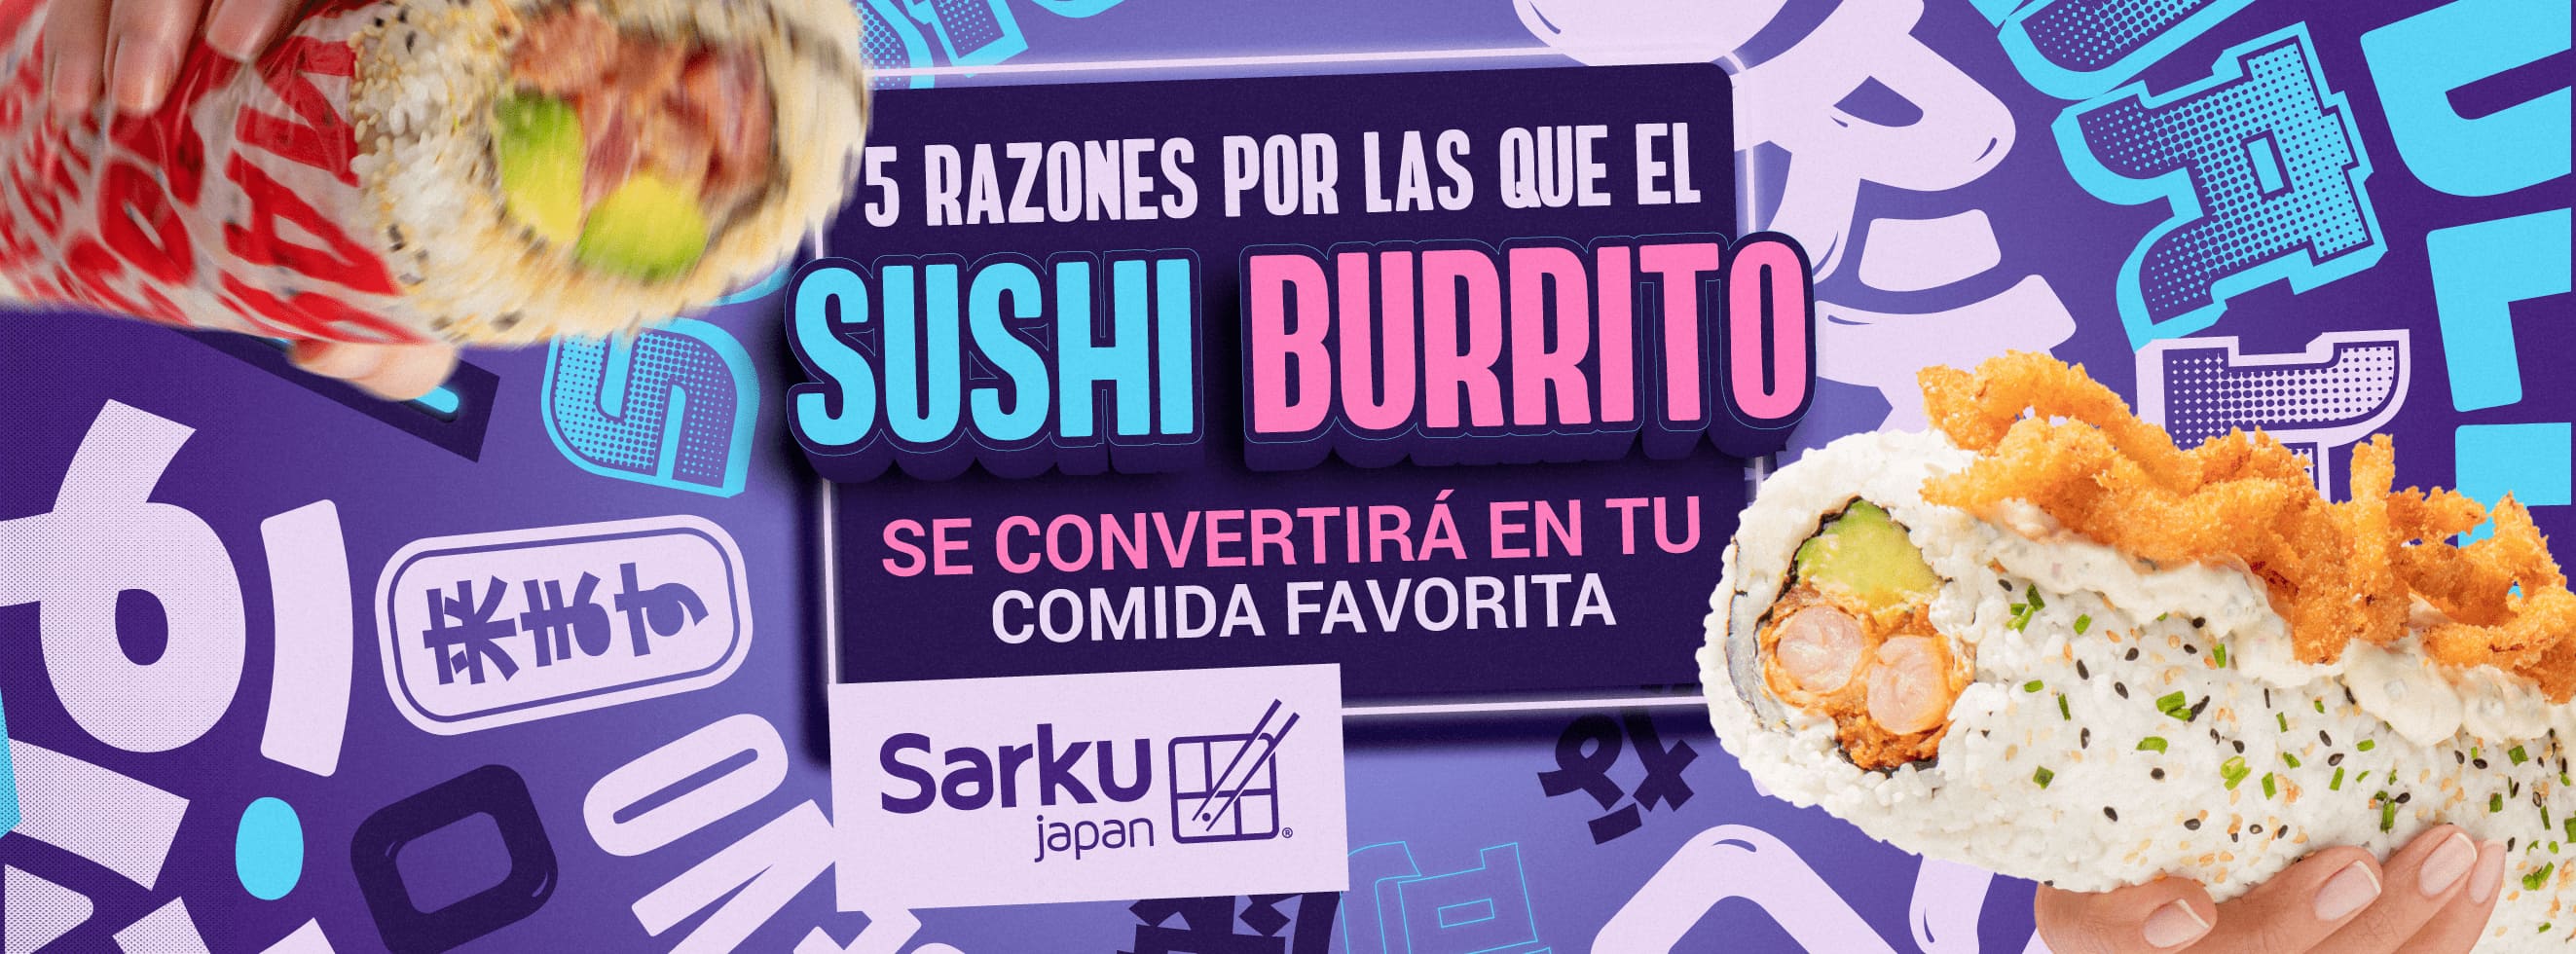 Cinco razones por las que el sushi burrito se convertirá en tu comida favorita